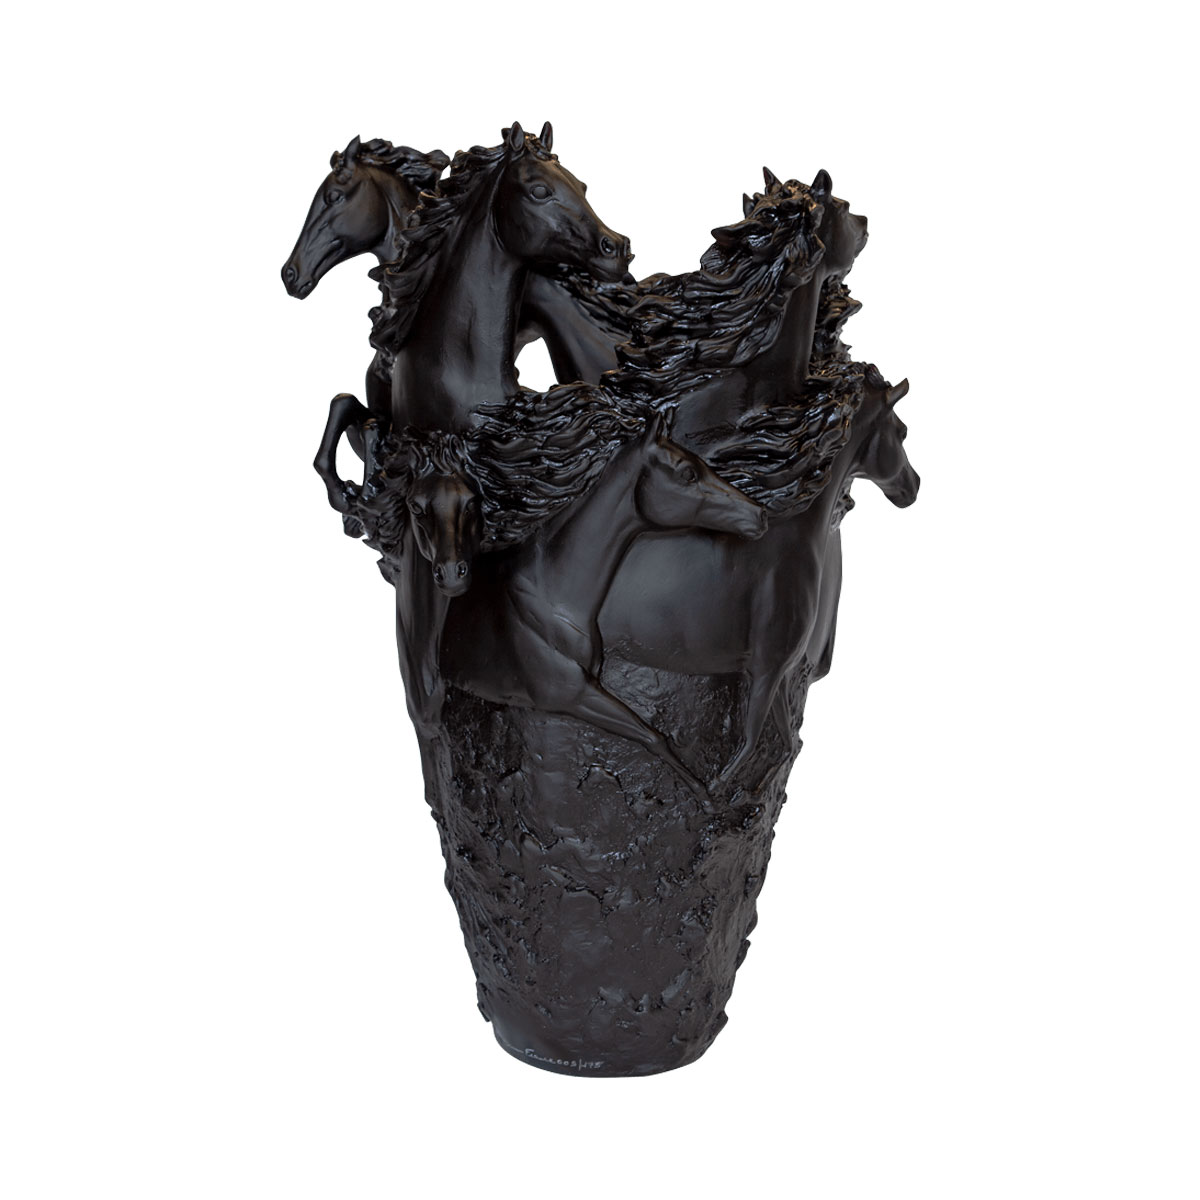 Daum 19.7" Horse Vase in Black, Limited Edition